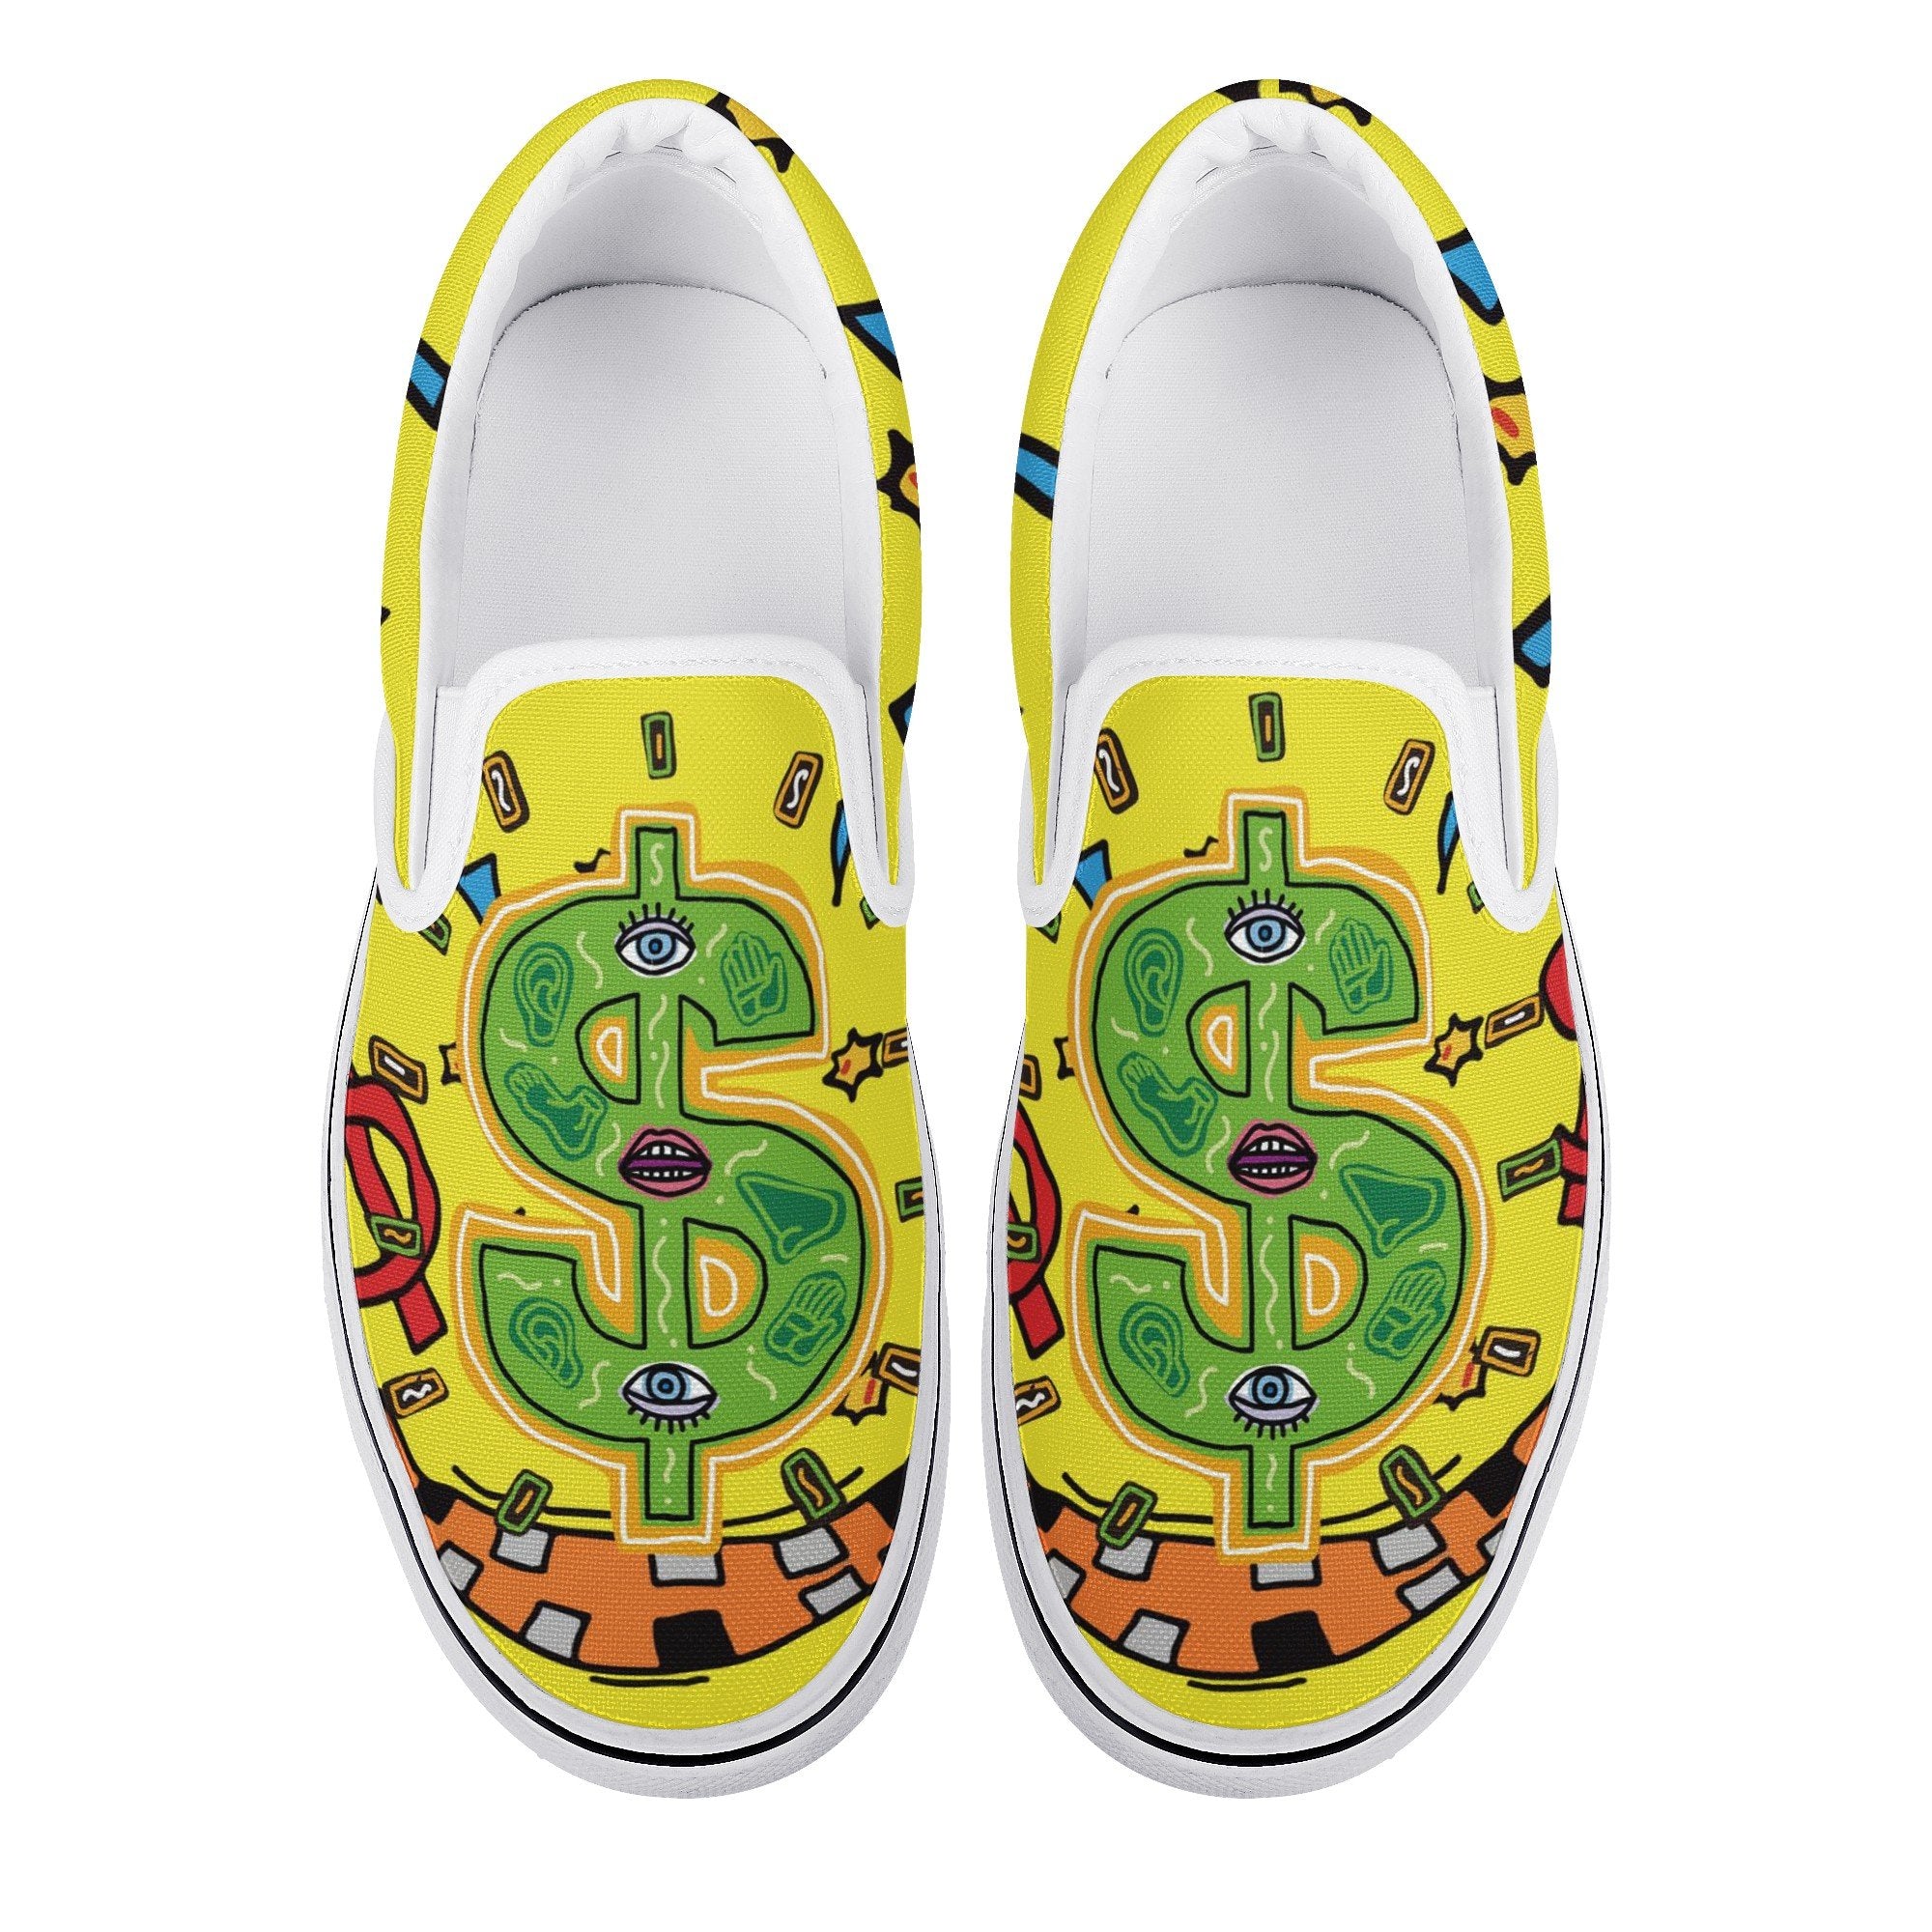 Money Talks Custom Vans Slip On Shoes